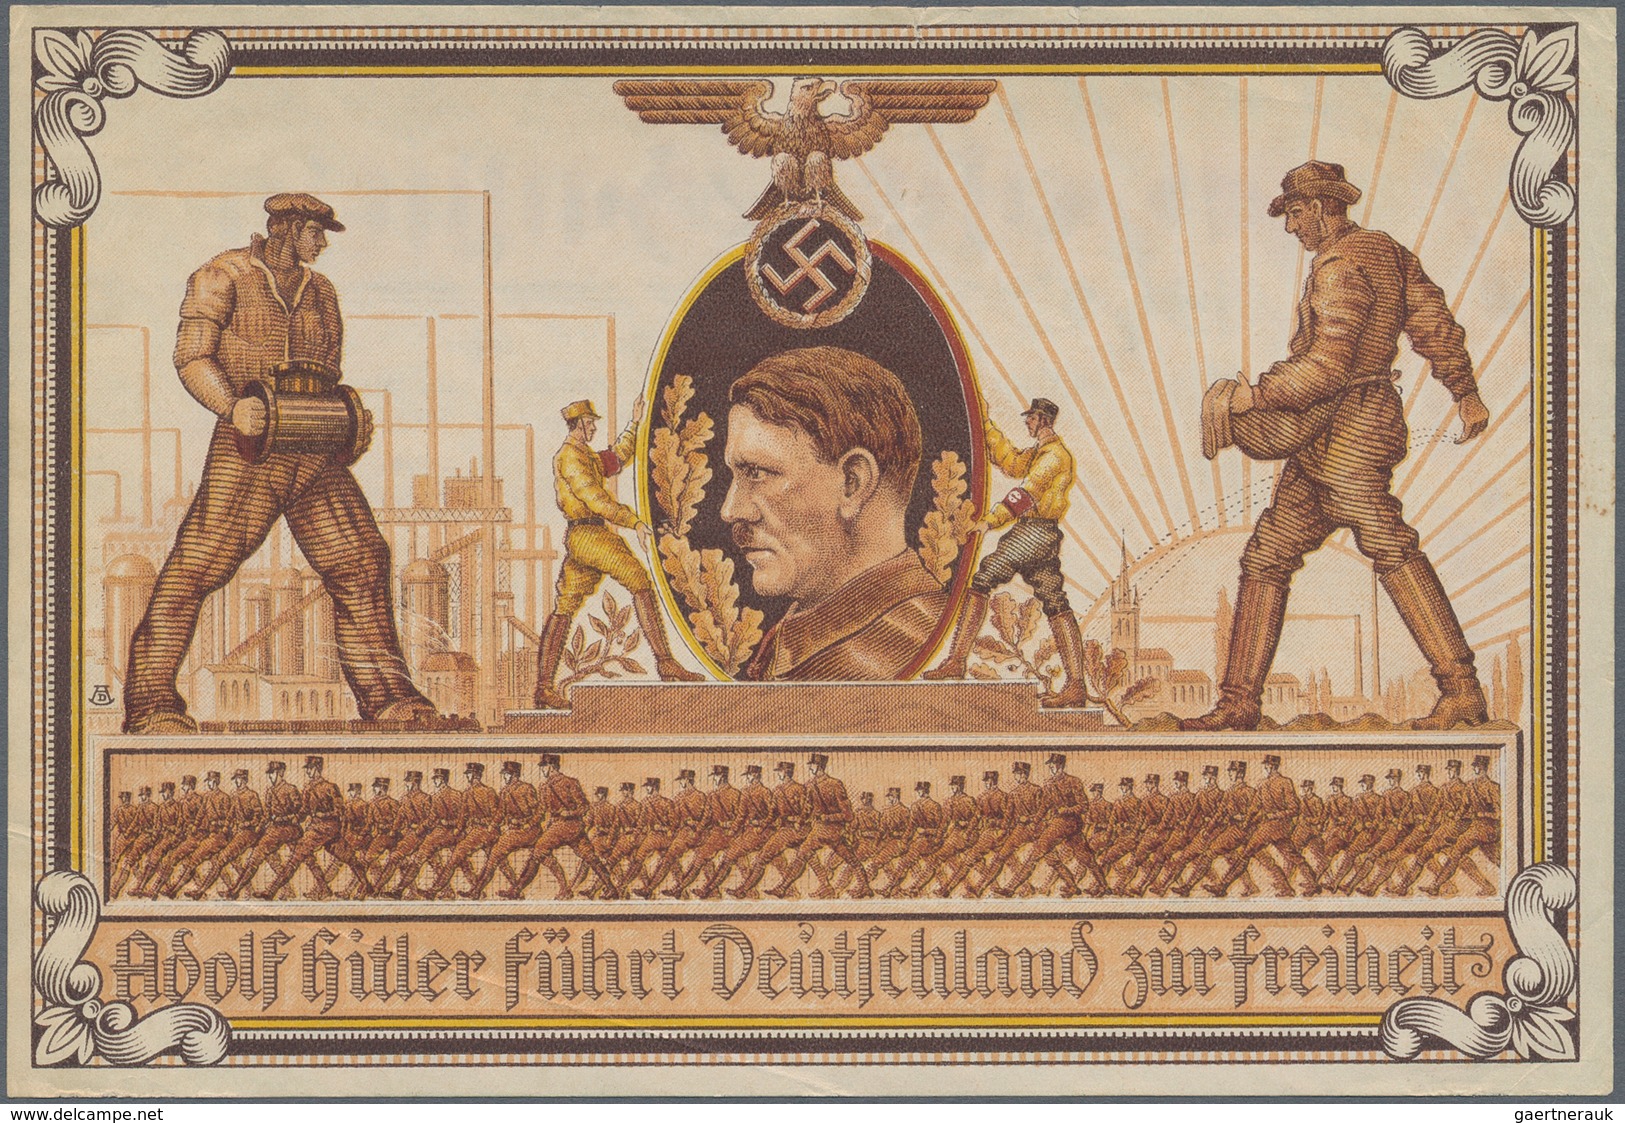 Ansichtskarten: Propaganda: 1932, "Hitler-Baustein", Baustein-Schein 50deutsche Reichspfennige, Beid - Partiti Politici & Elezioni